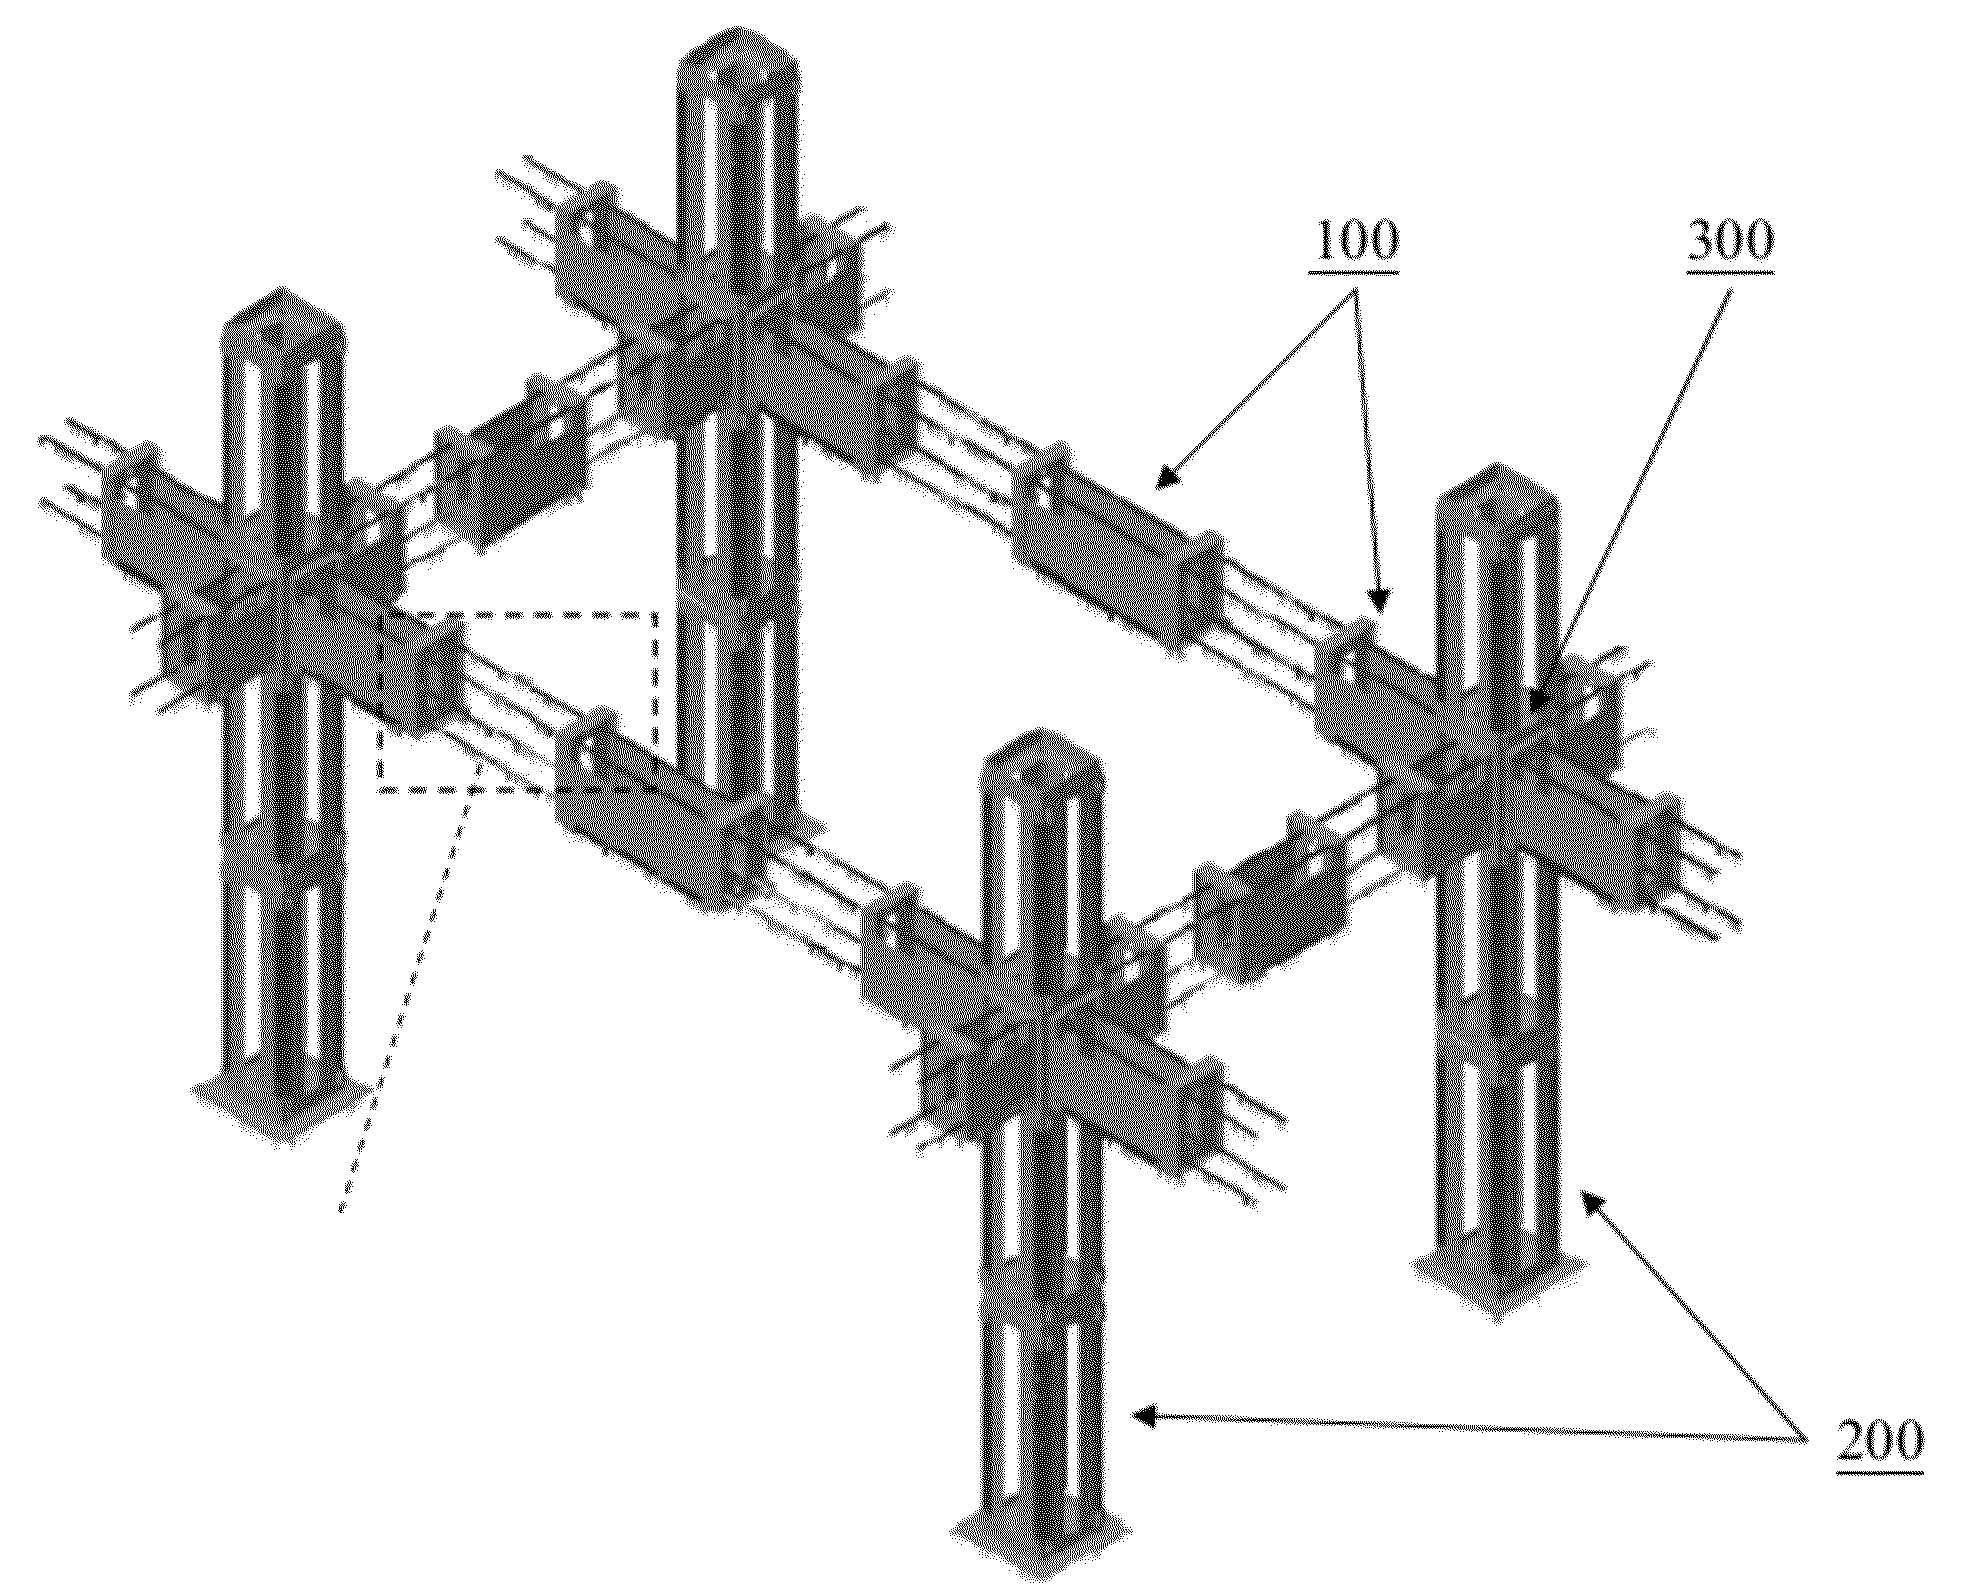 Architectured reinforcement structure